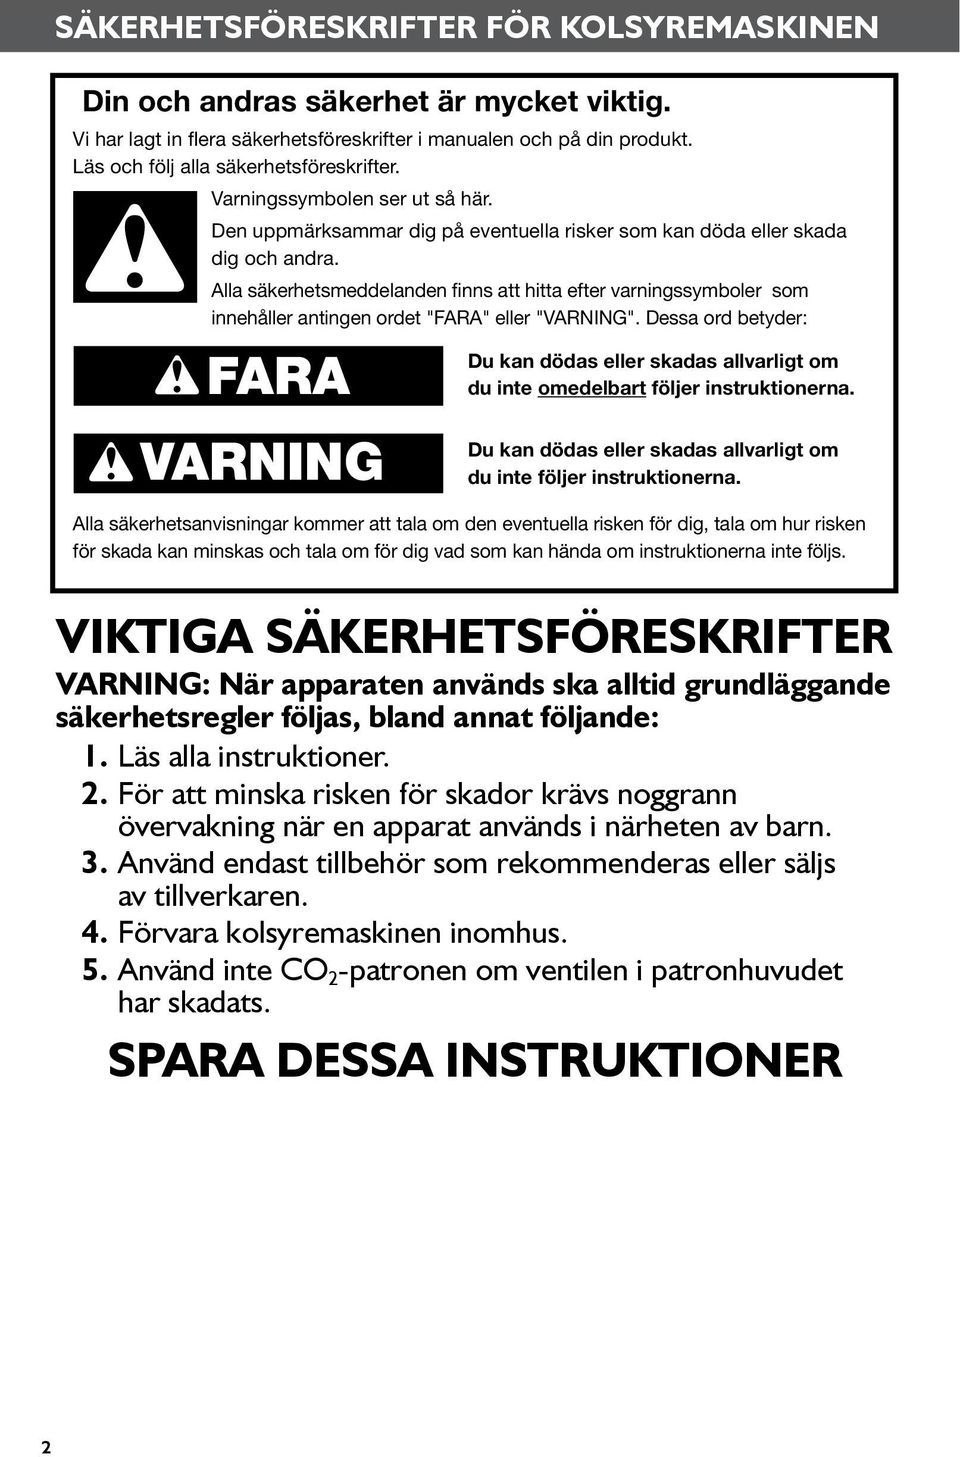 Alla säkerhetsmeddelanden finns att hitta efter varningssymboler som innehåller antingen ordet "FARA" eller "VARNING".